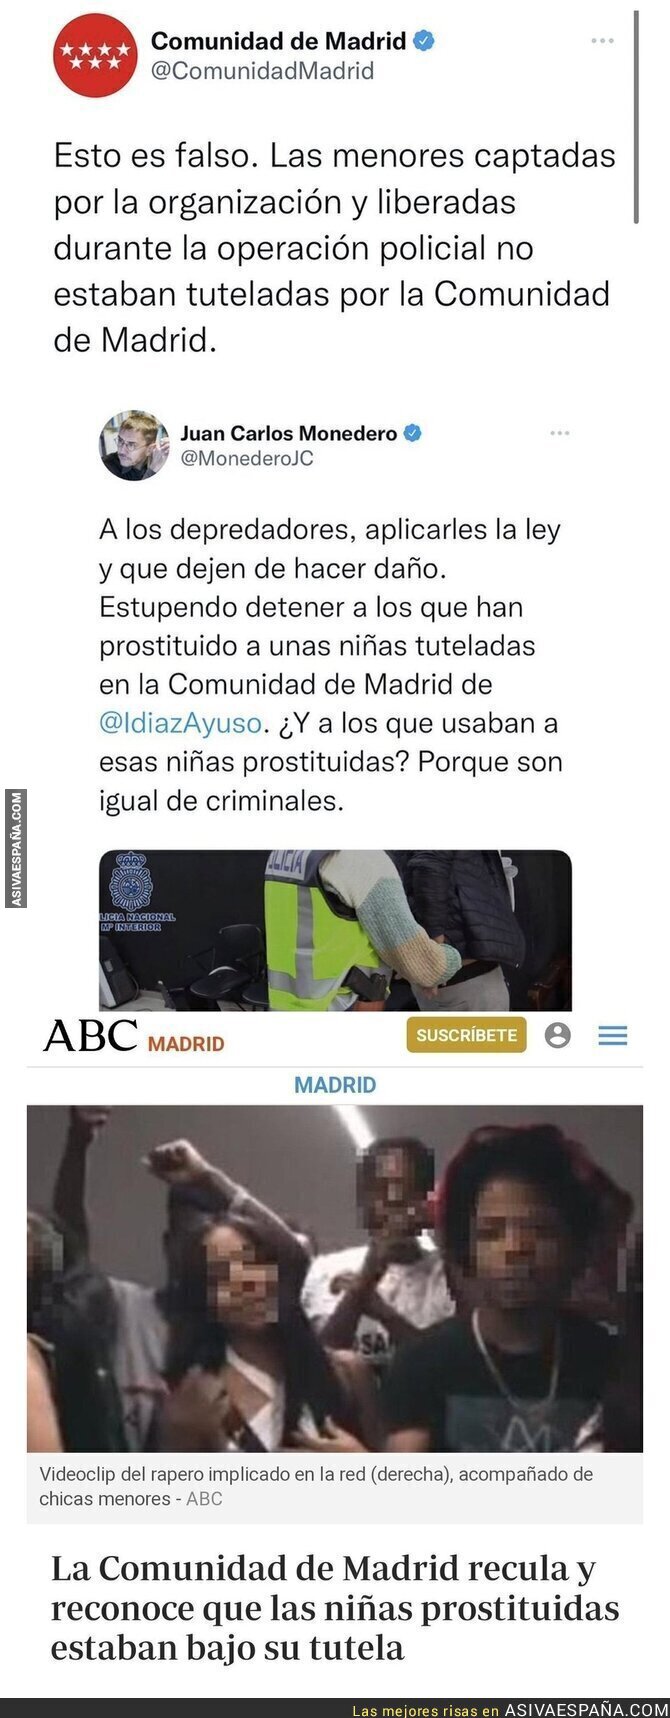 La Comunidad de Madrid se da un tiro en el pie con las niñas prostituidas